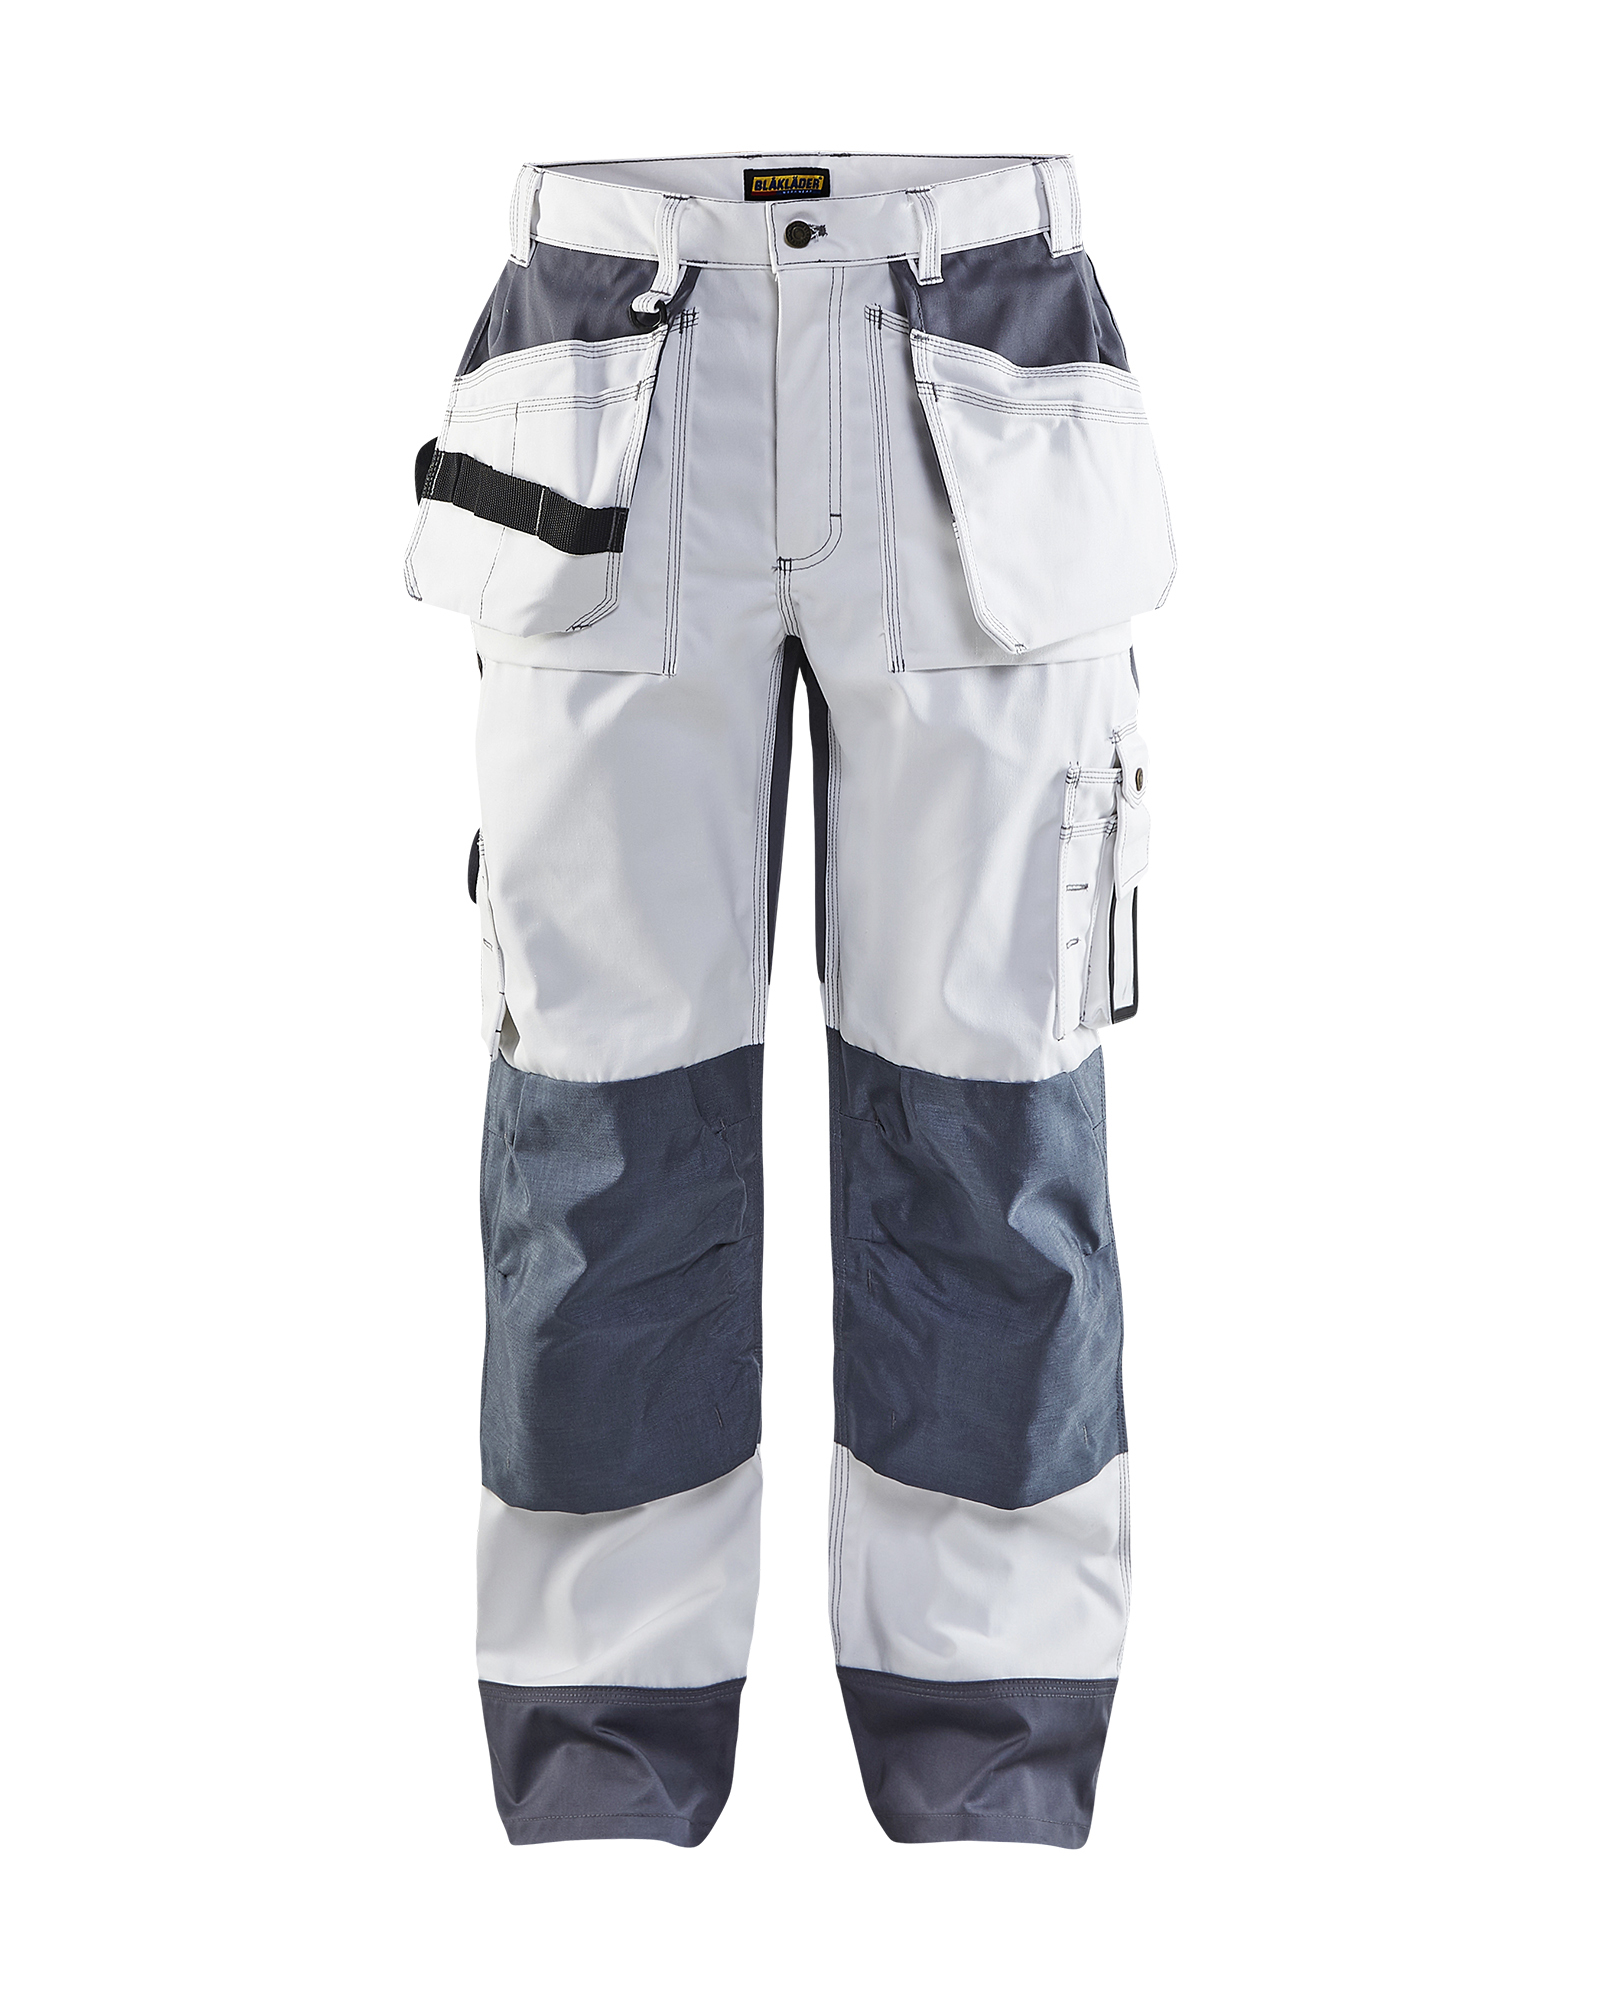 Pantalon artisan bicolore Blåkläder 1503 Blanc/Gris clair Blaklader - 150318601094C